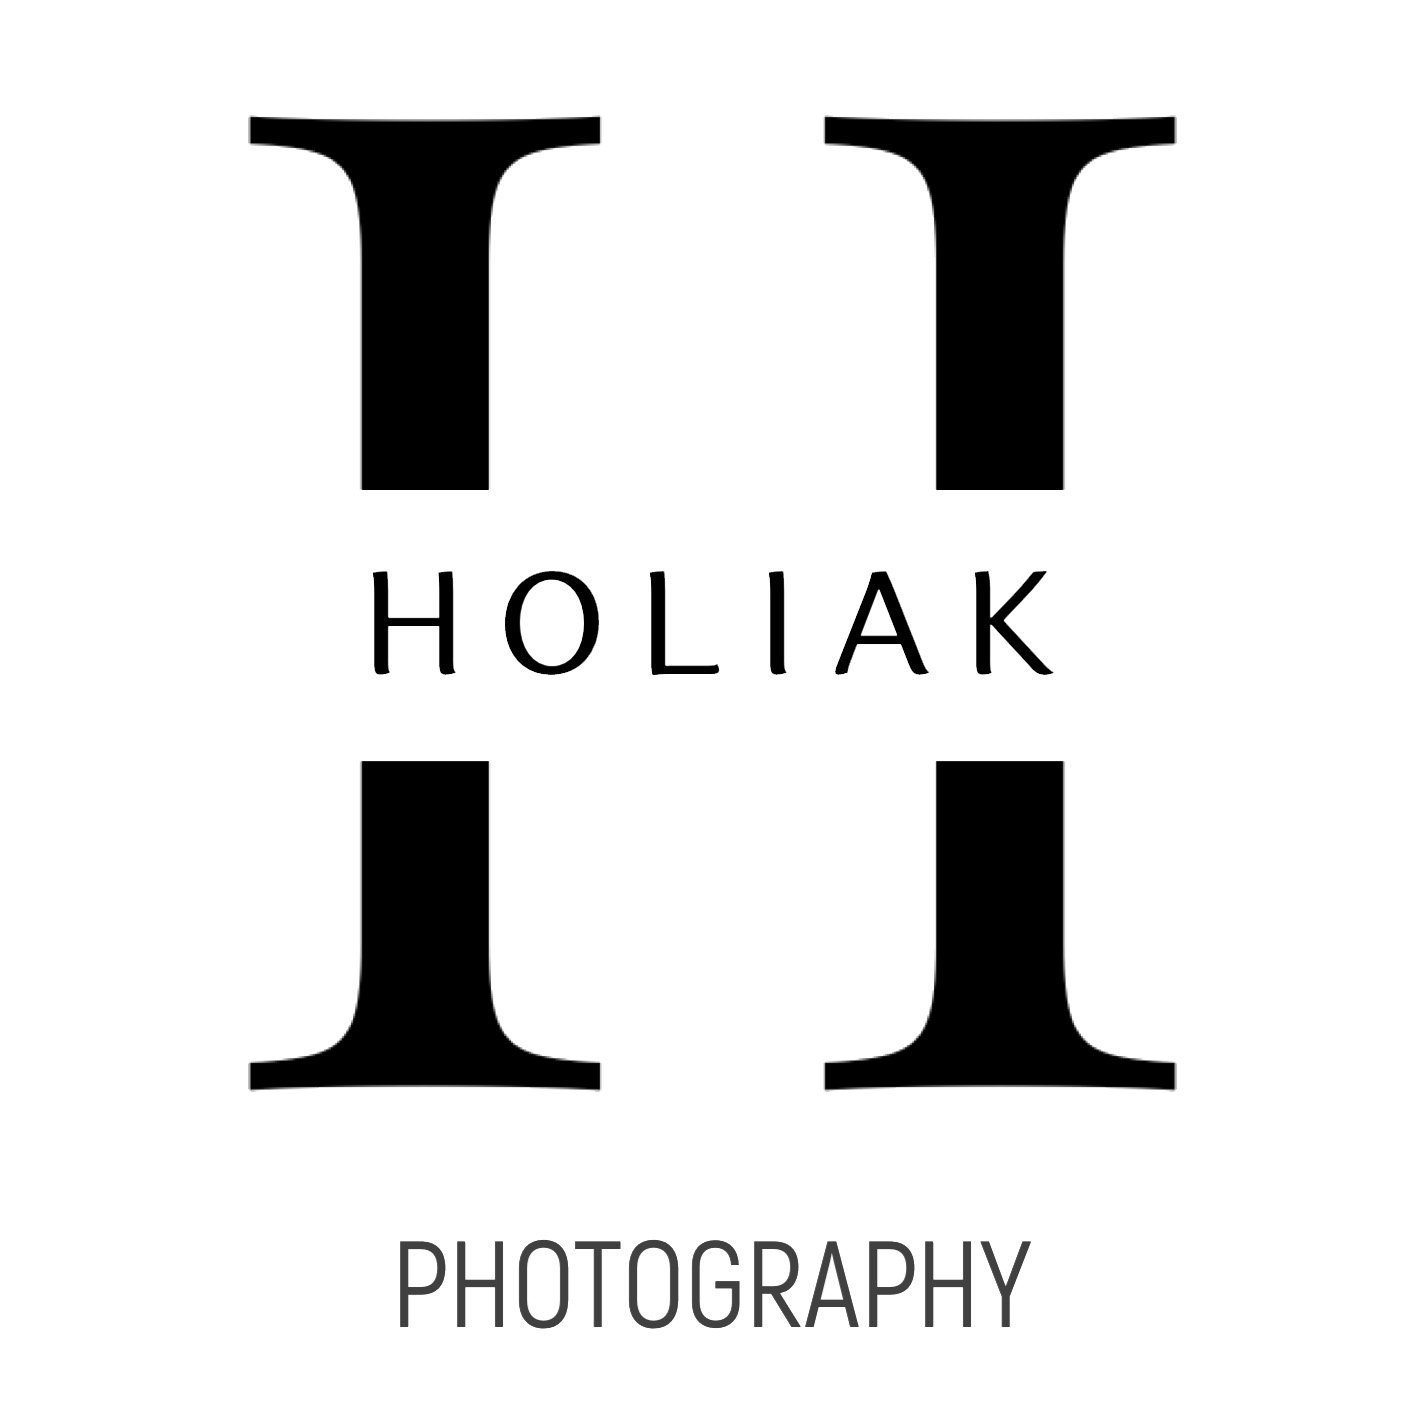 Kate Holiak photography